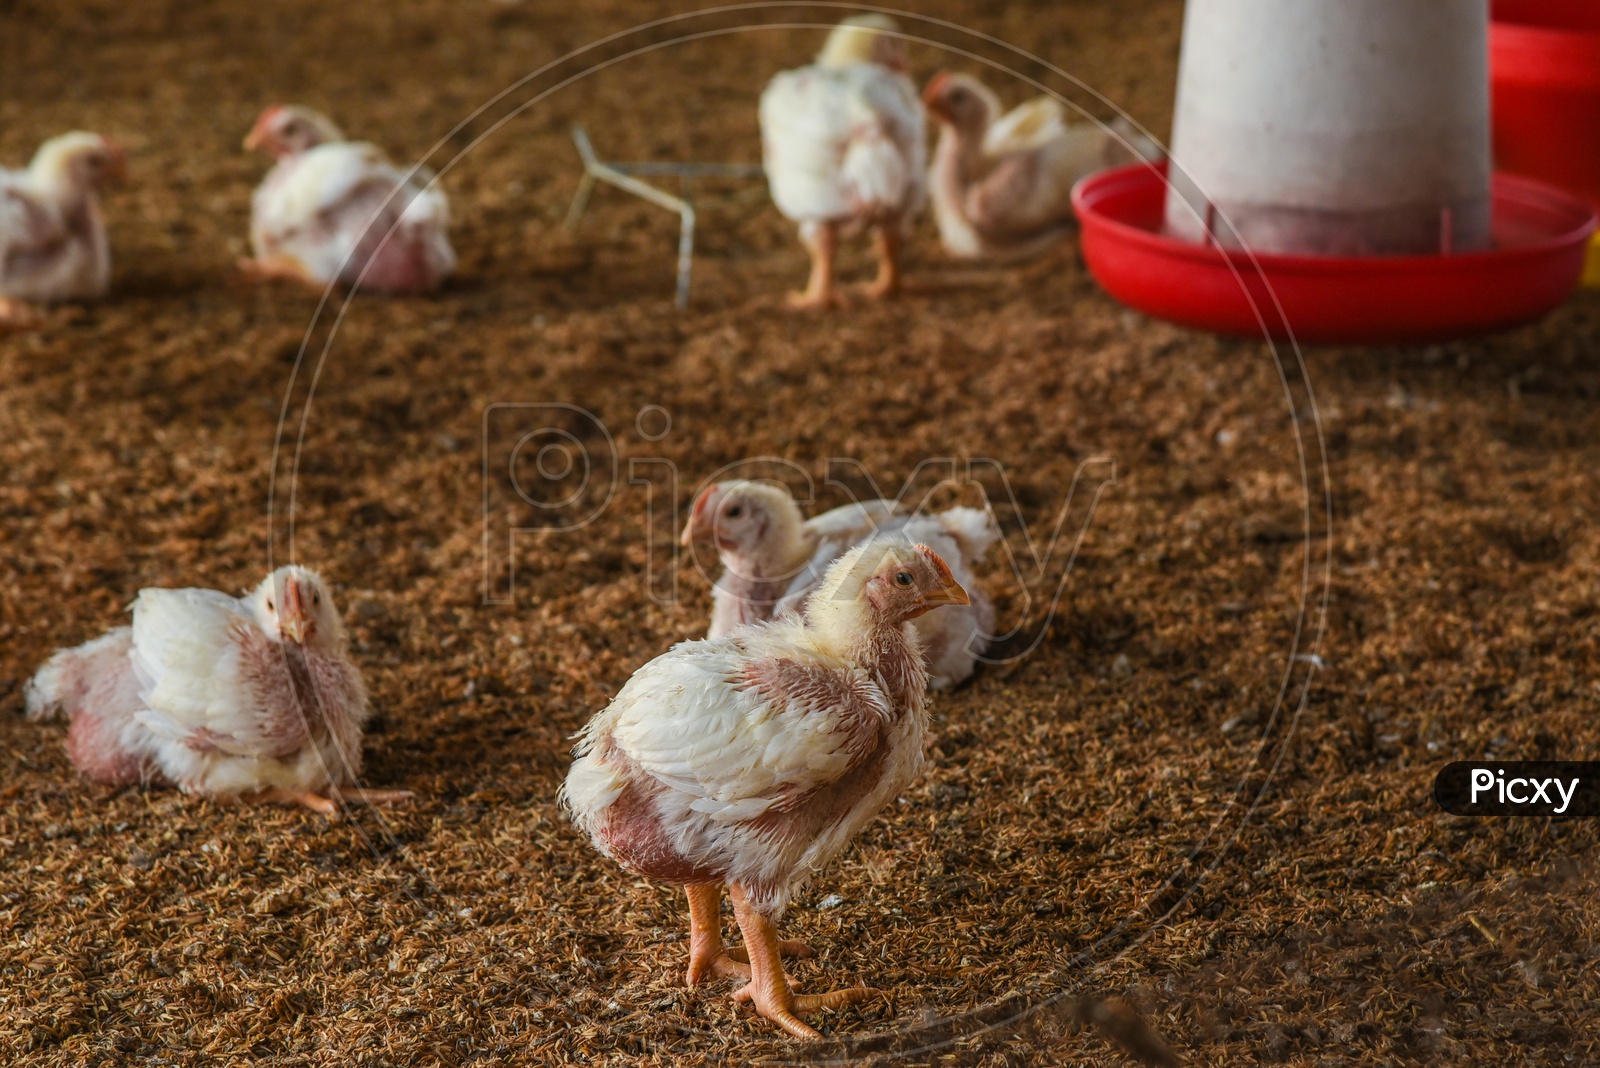 Chicken in Poultry Farm